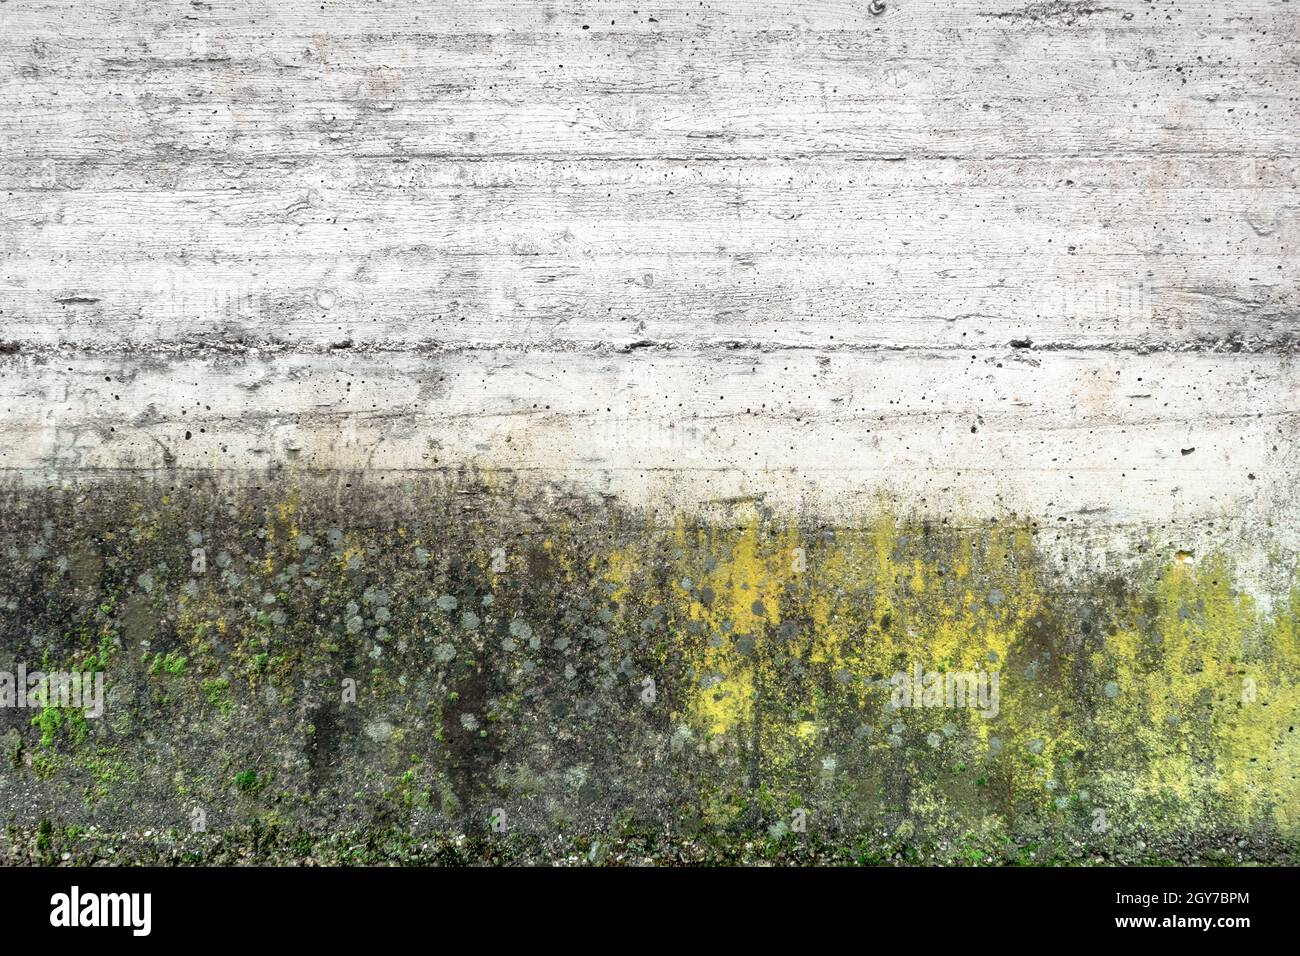 Moulez et mousse sur la texture du mur de gringe. La surface de l'ancien mur en béton recouvert de mousse ou d'algues. Banque D'Images